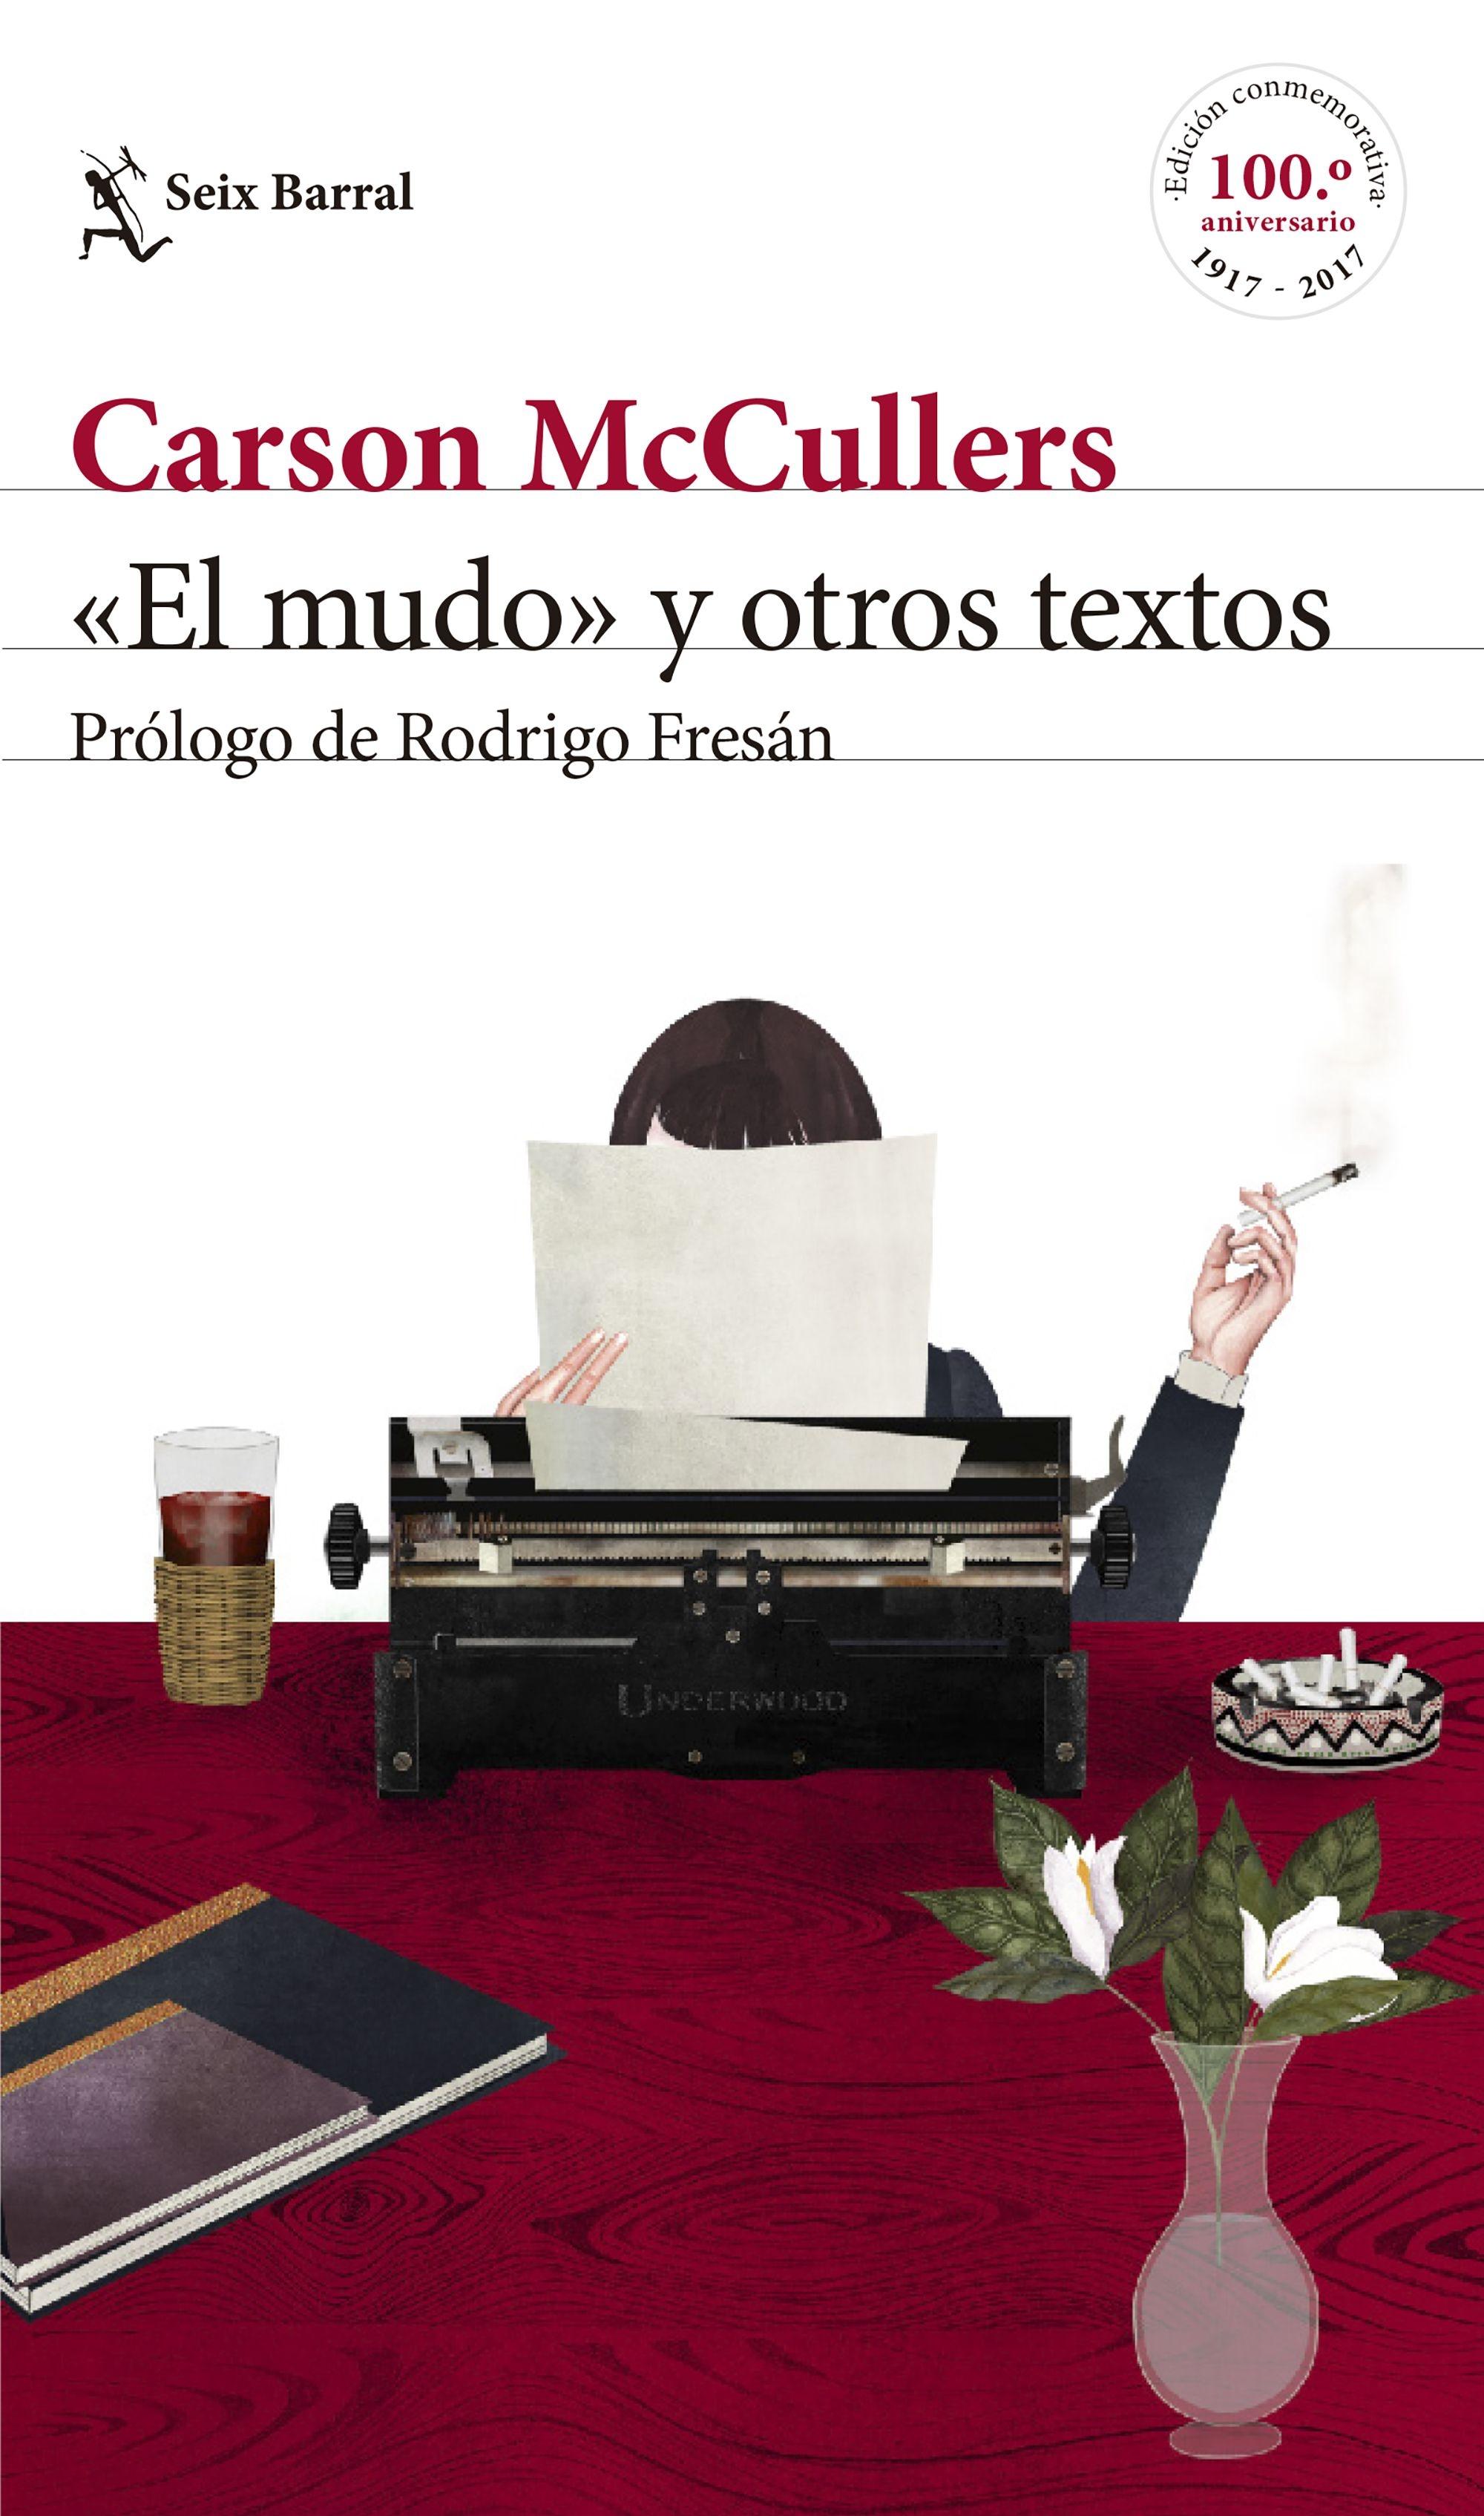 El mudo  y otros textos "Prólogo de Rodrigo Fresán"